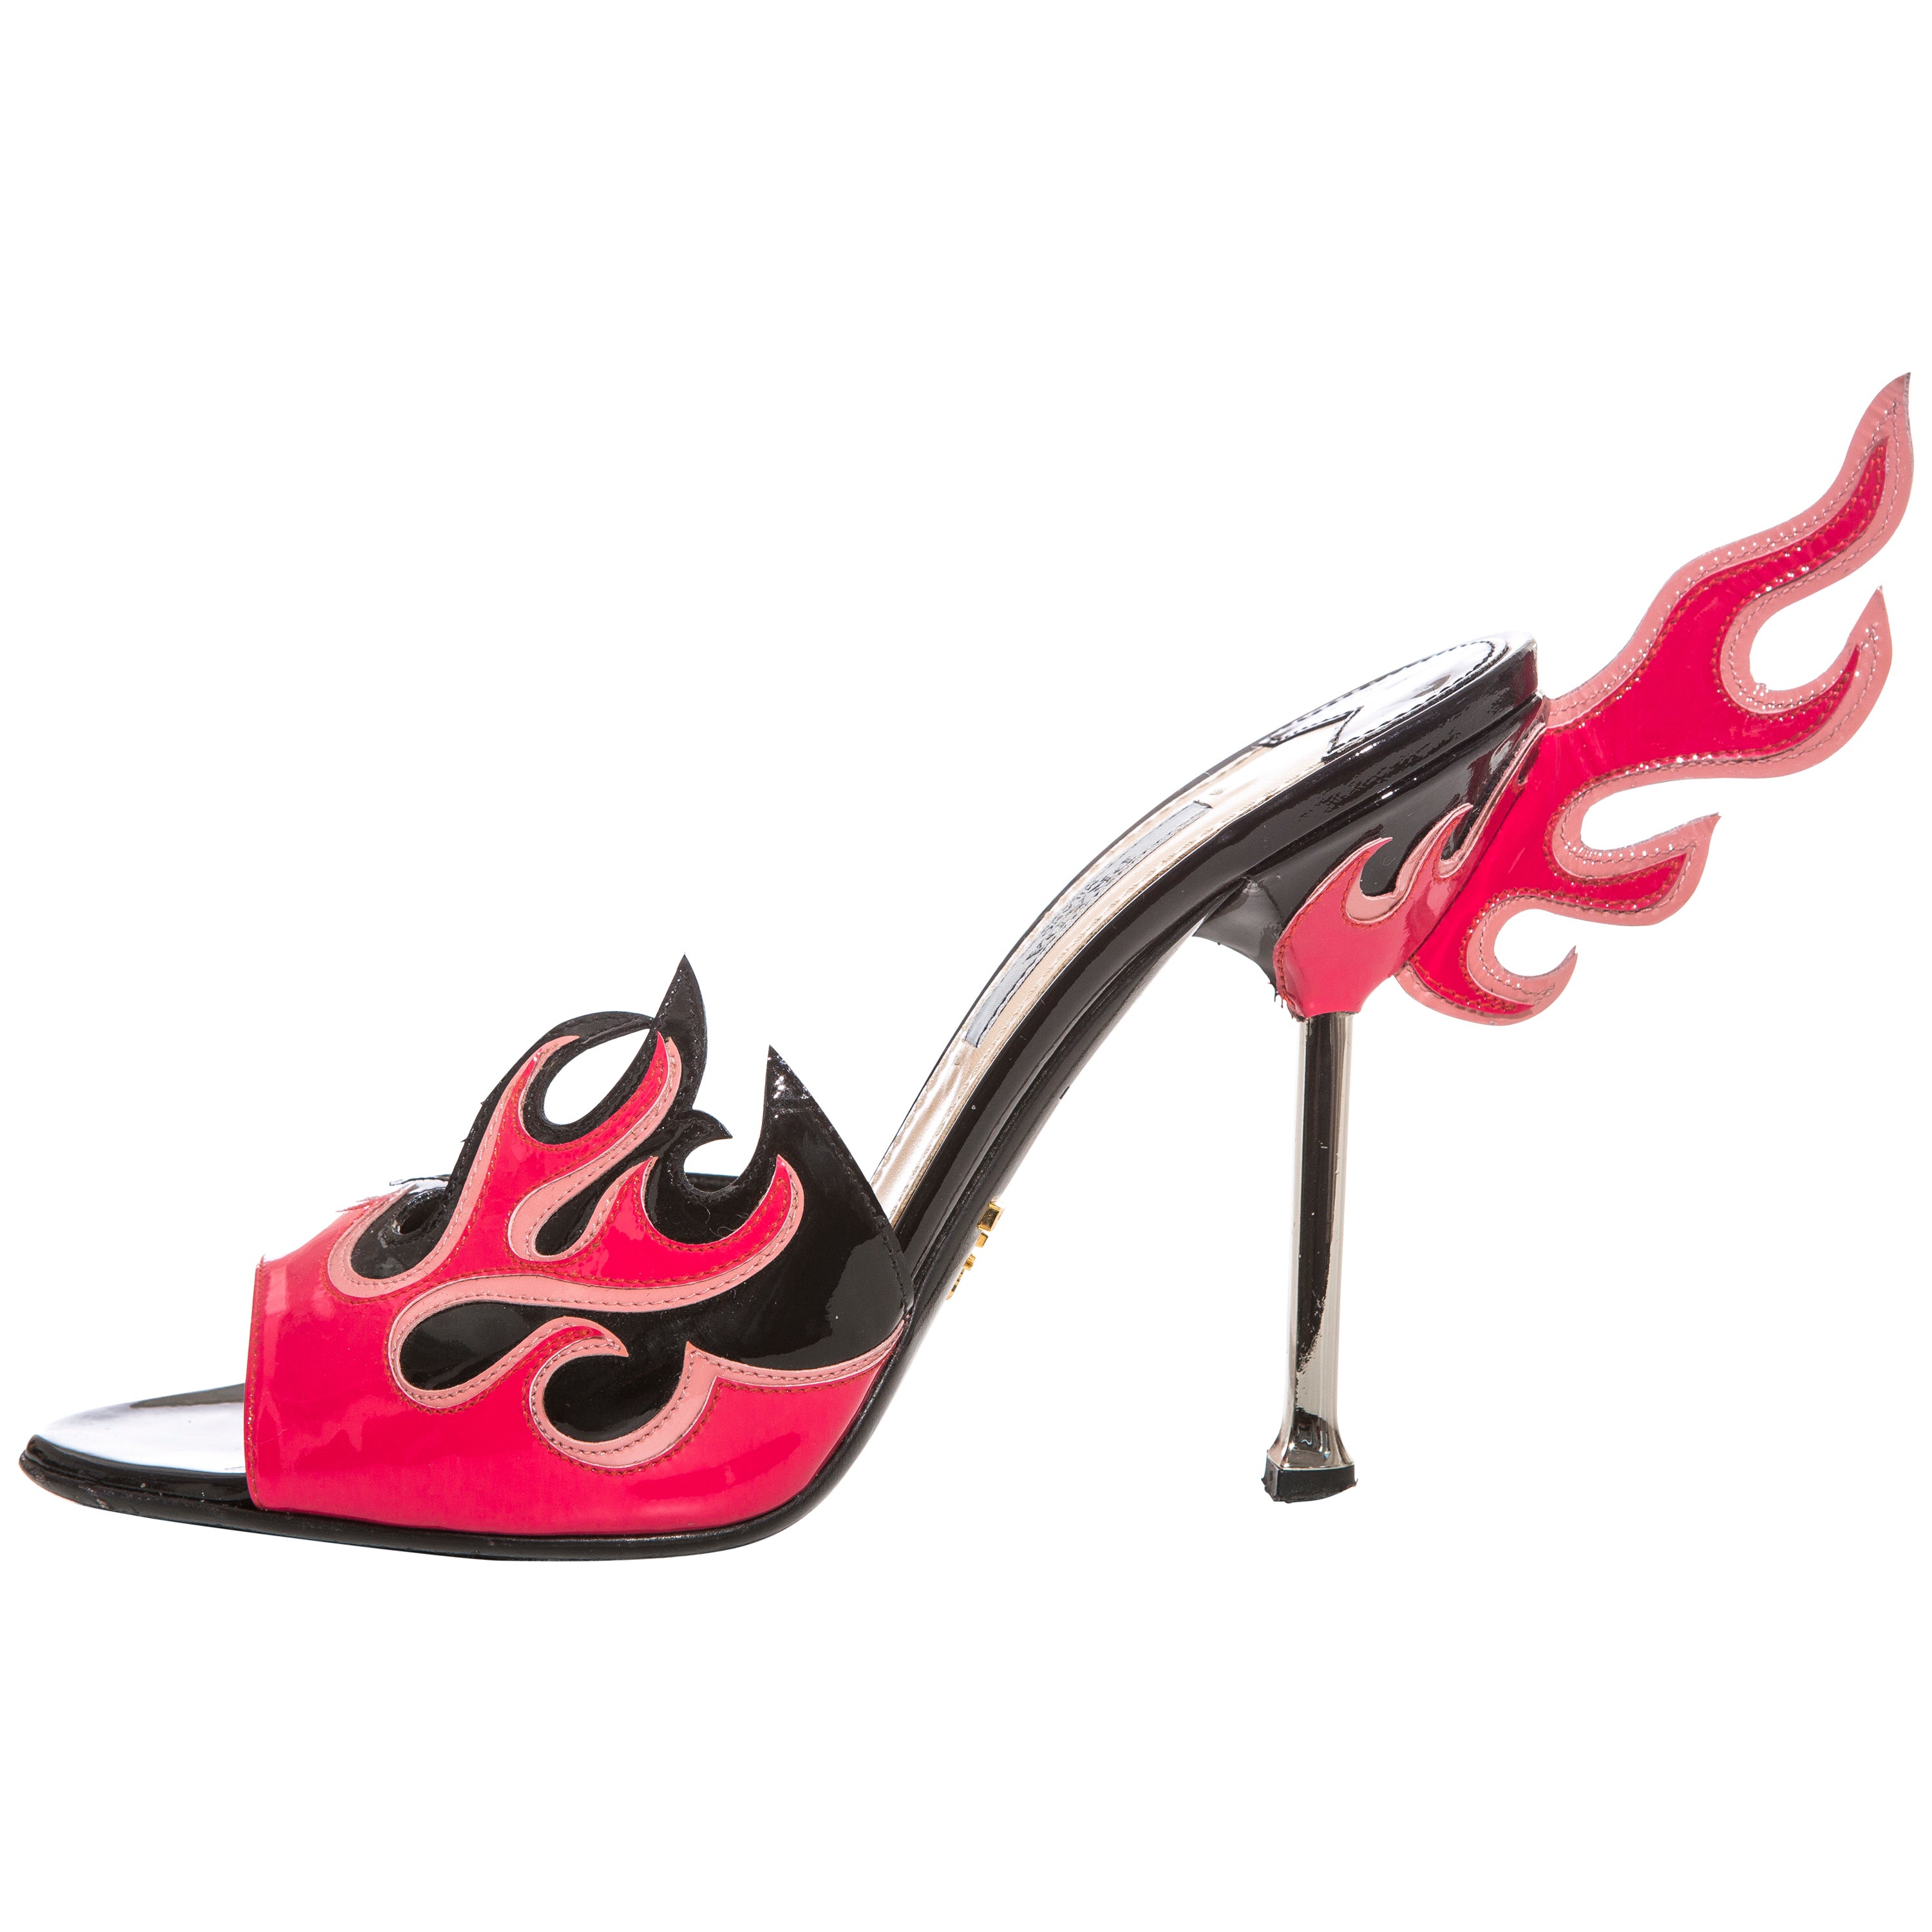 Prada Flame Shoes - For Sale on 1stDibs | prada heels flame, prada fire  shoes, prada flame heels price